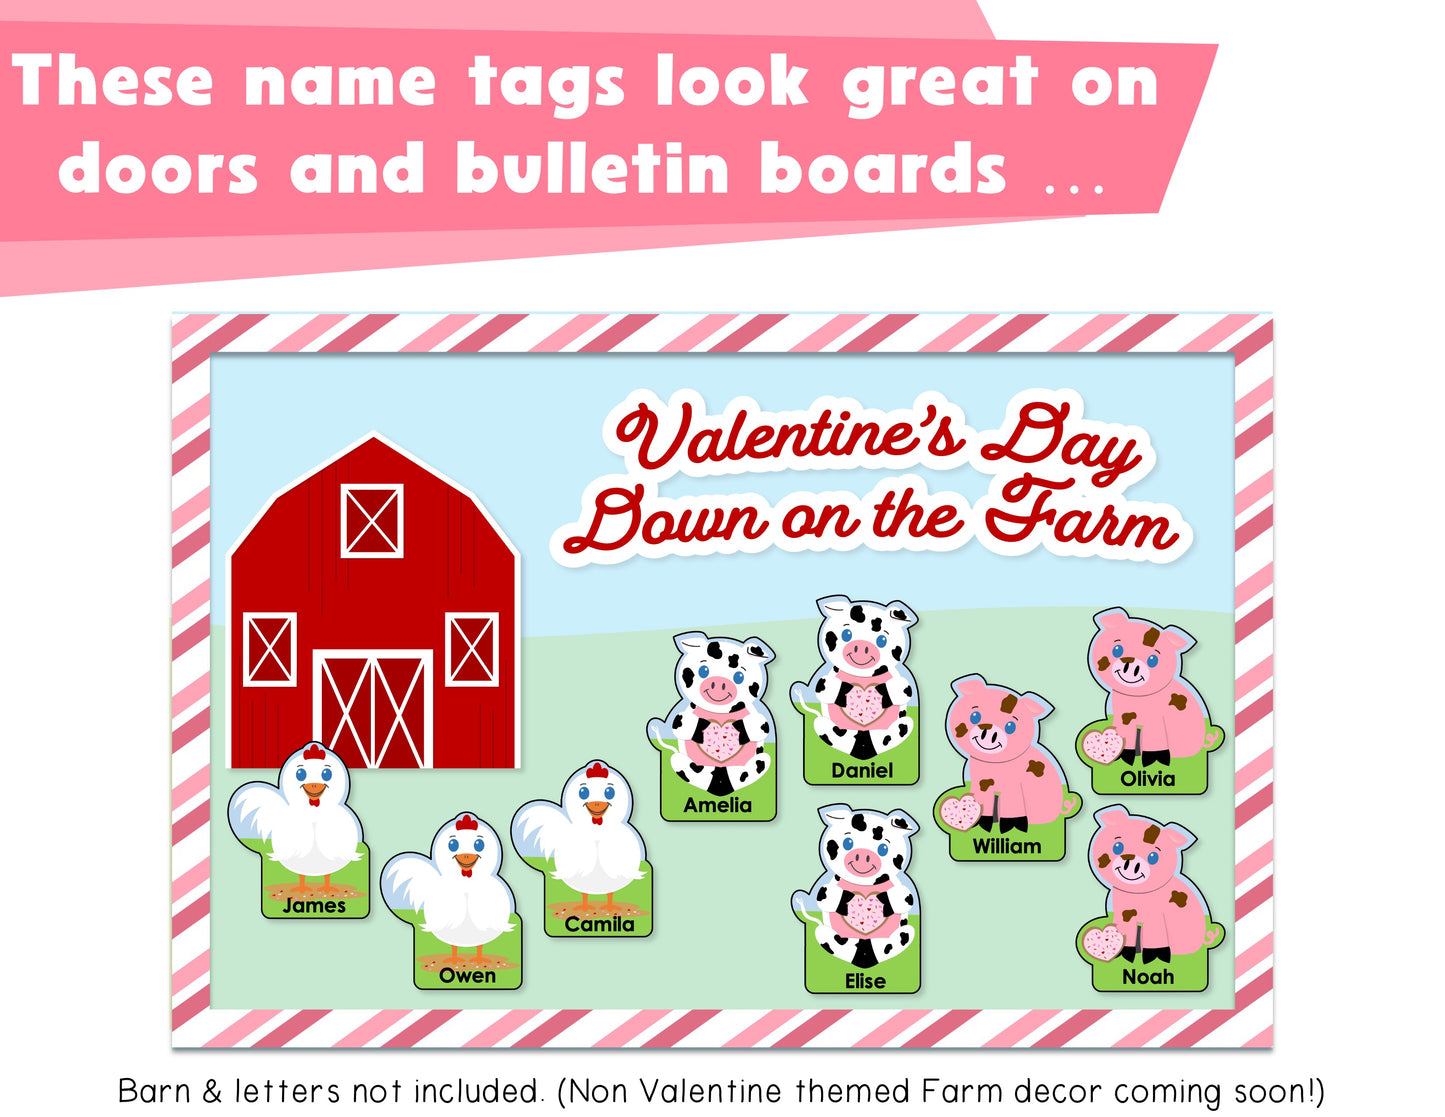 Editable Farm Themed St. Valentines Cubby Tags